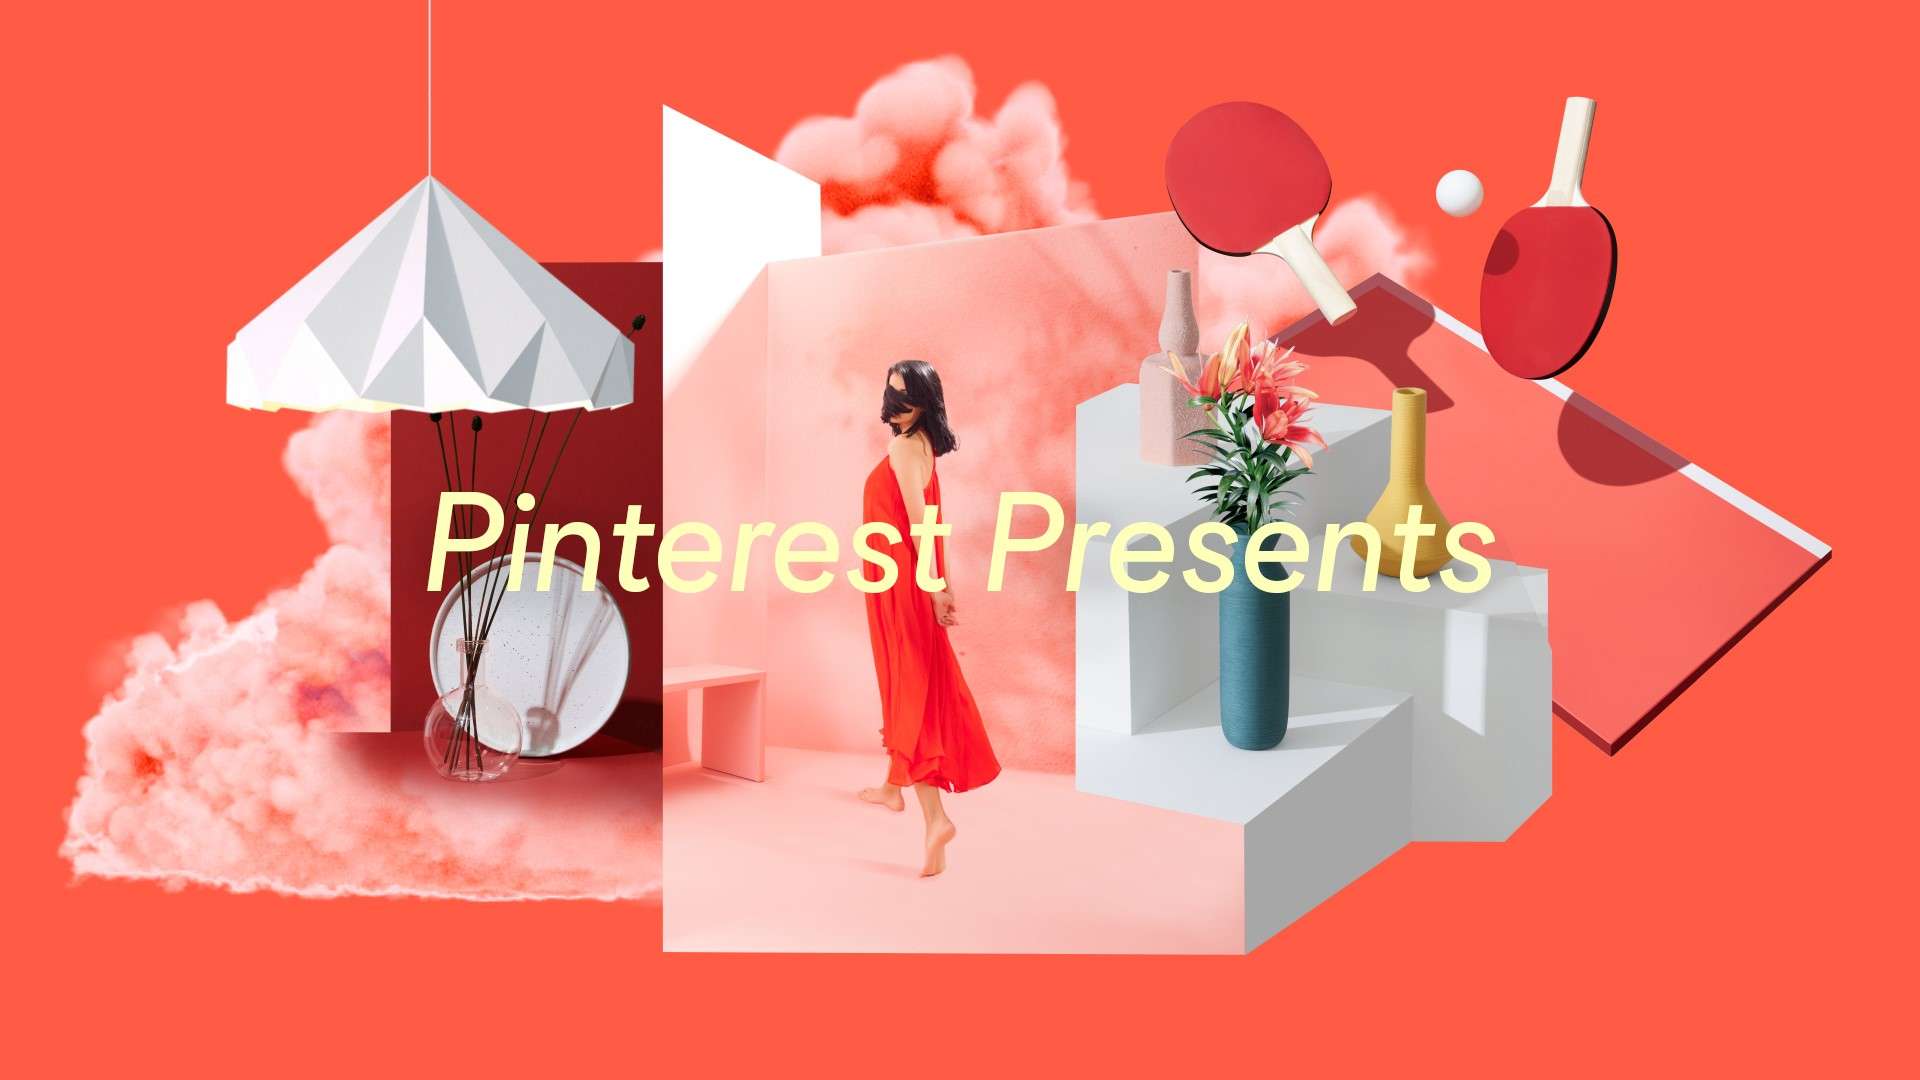 Pinterest Presents: positividade e futuro